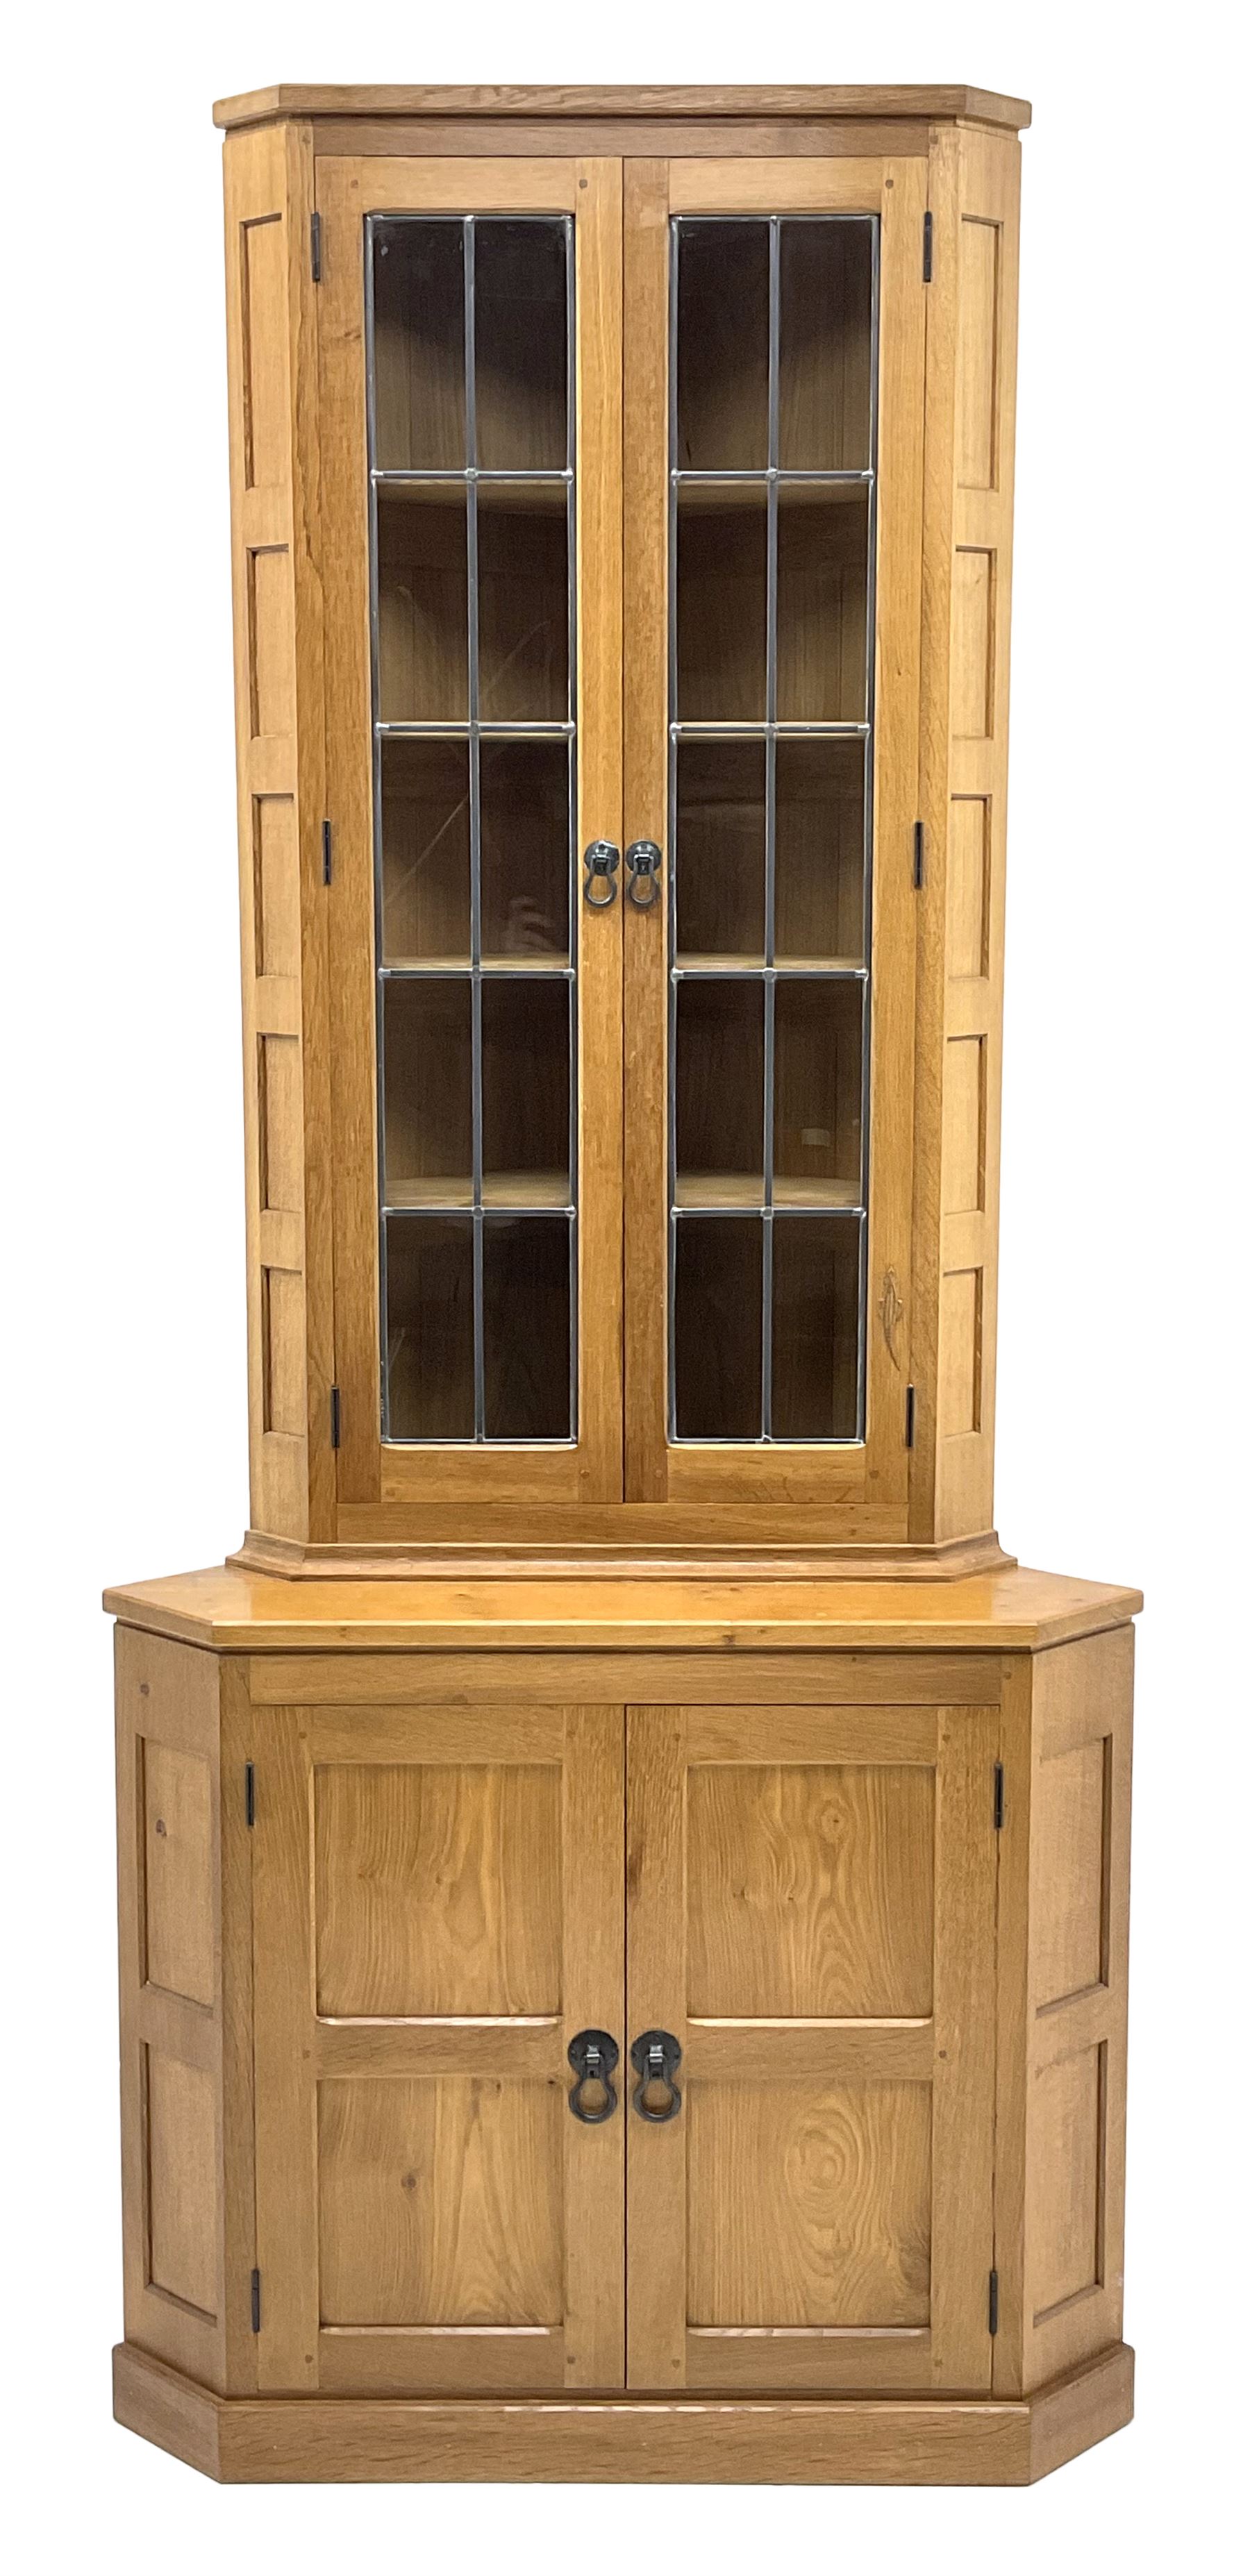 �Lizardman� oak corner cabinet